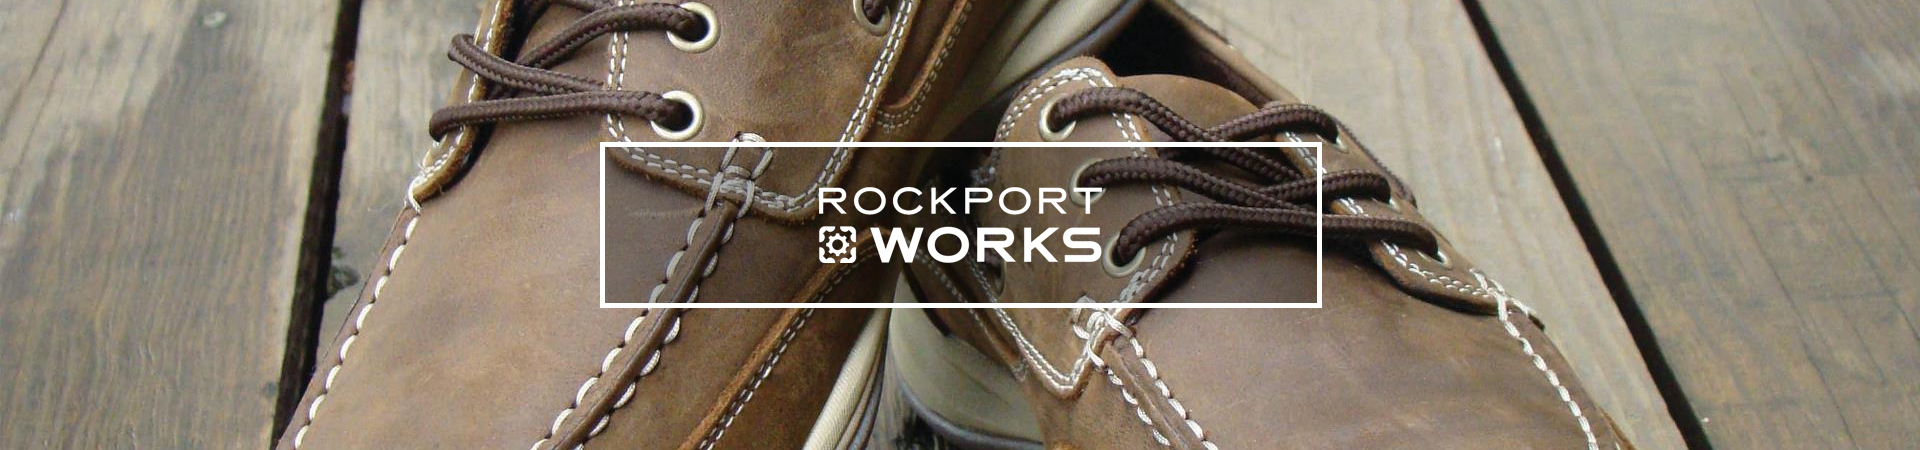 rockport slip resistant women's